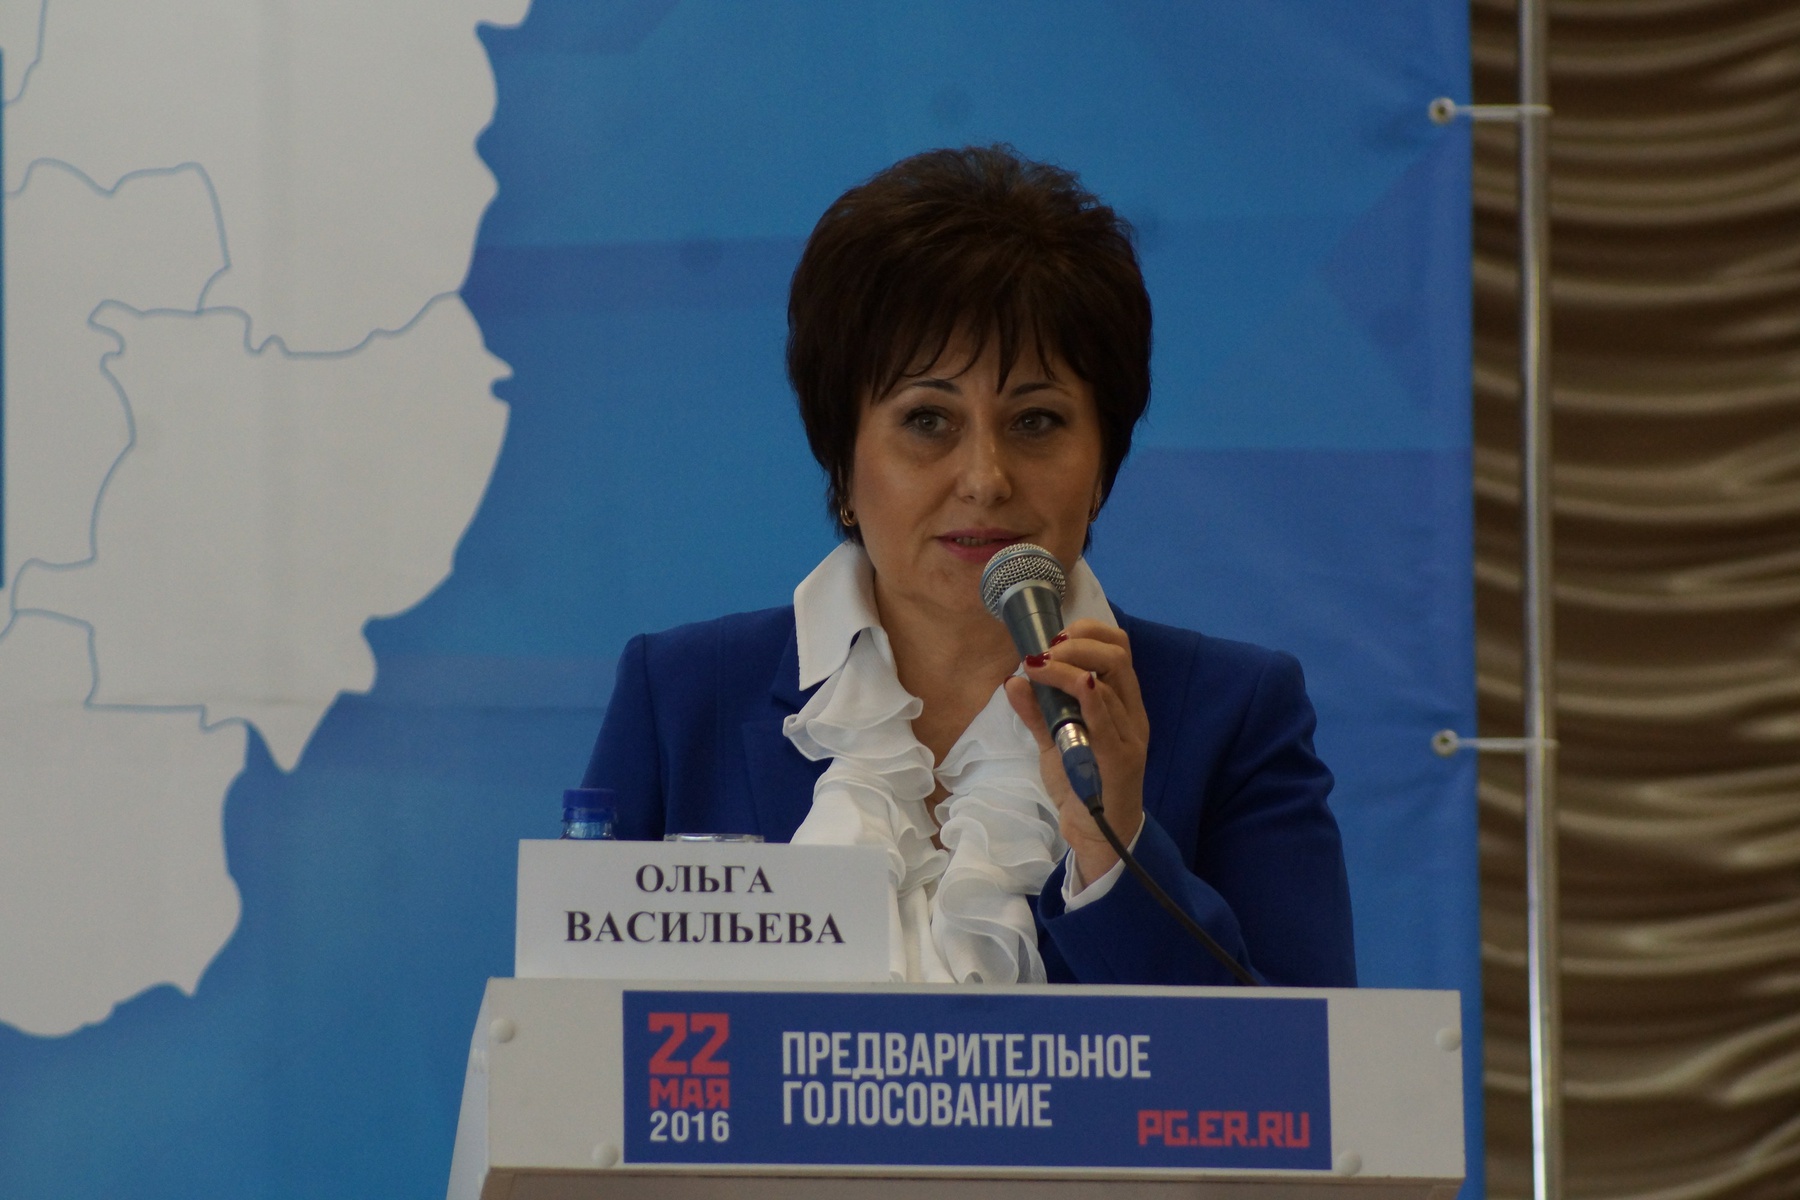  Дебаты участников предварительного голосования в регионах РФ. Смоленск